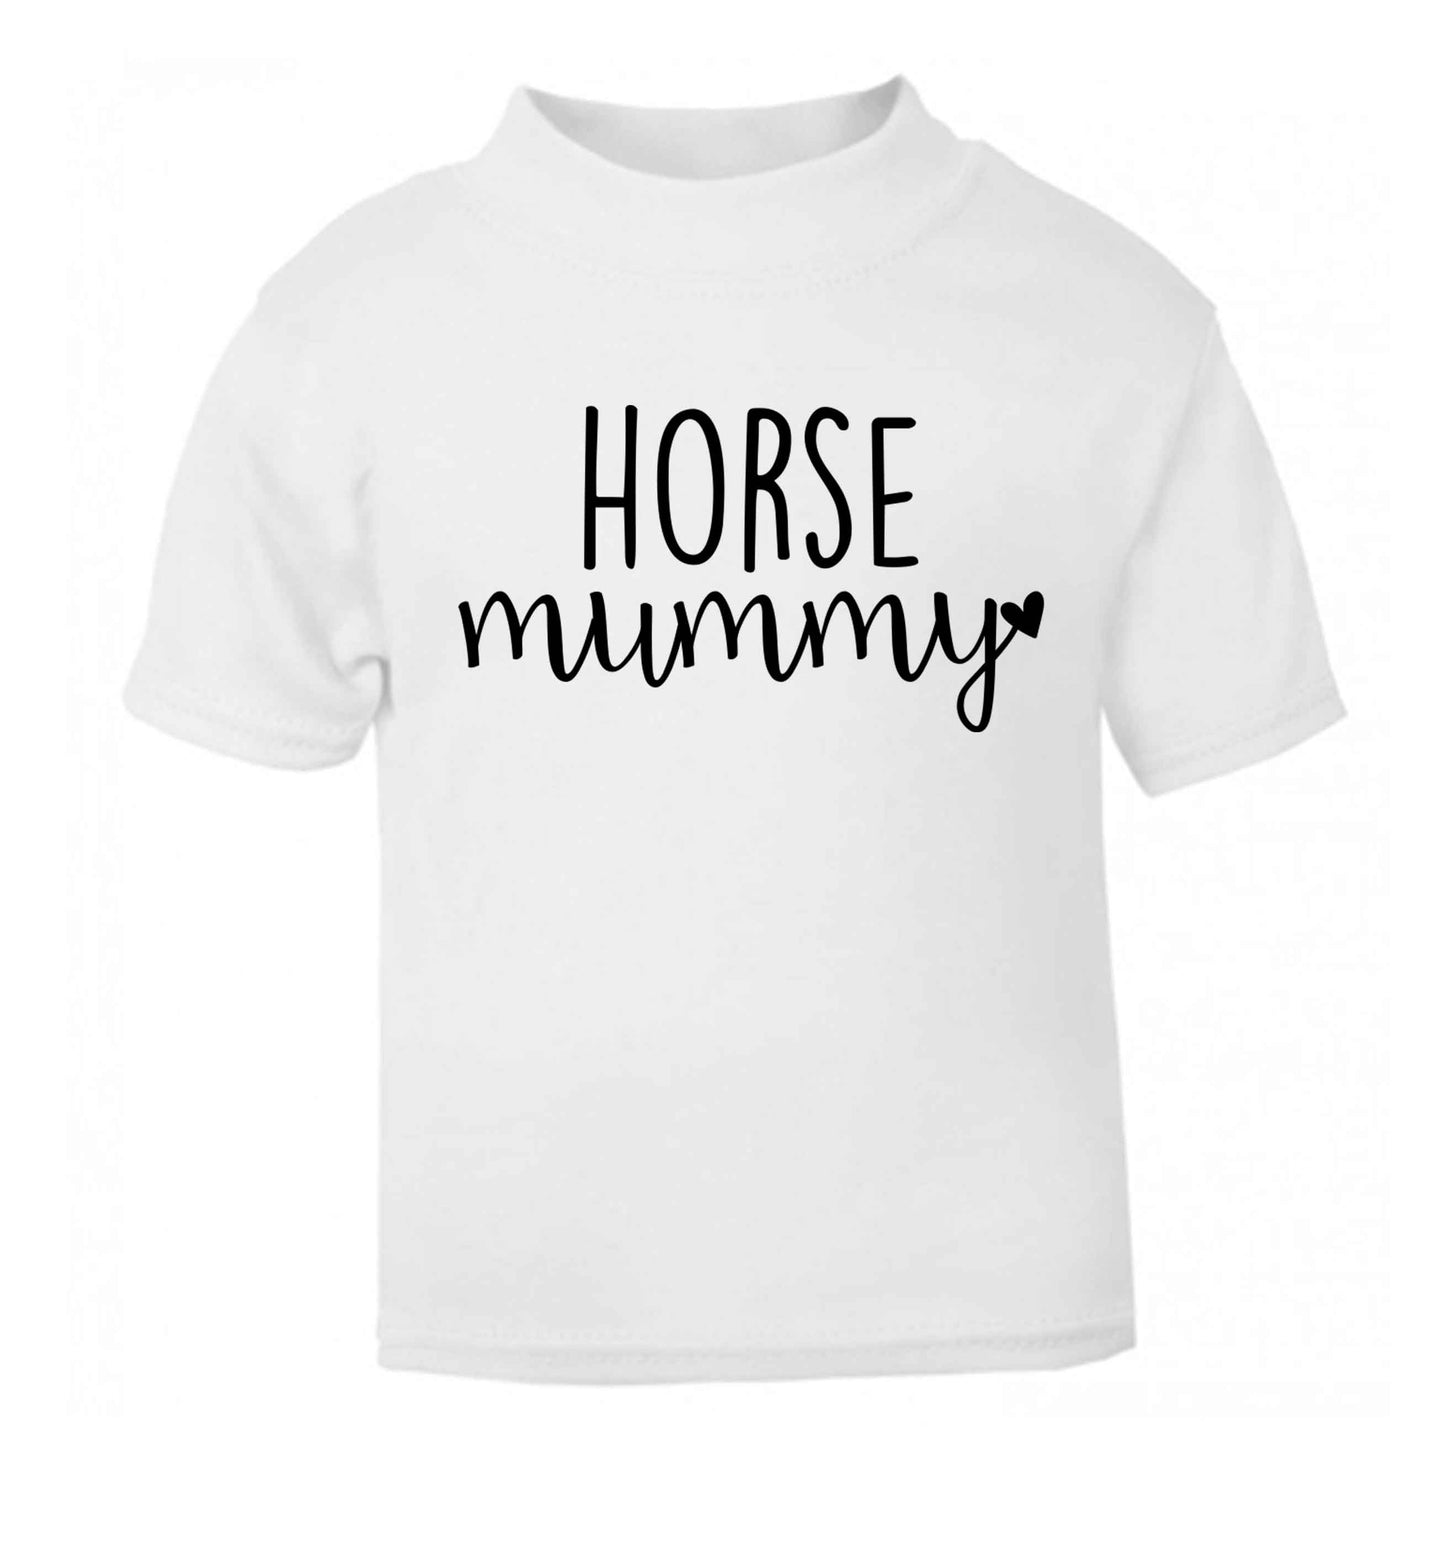 Horse mummy white baby toddler Tshirt 2 Years